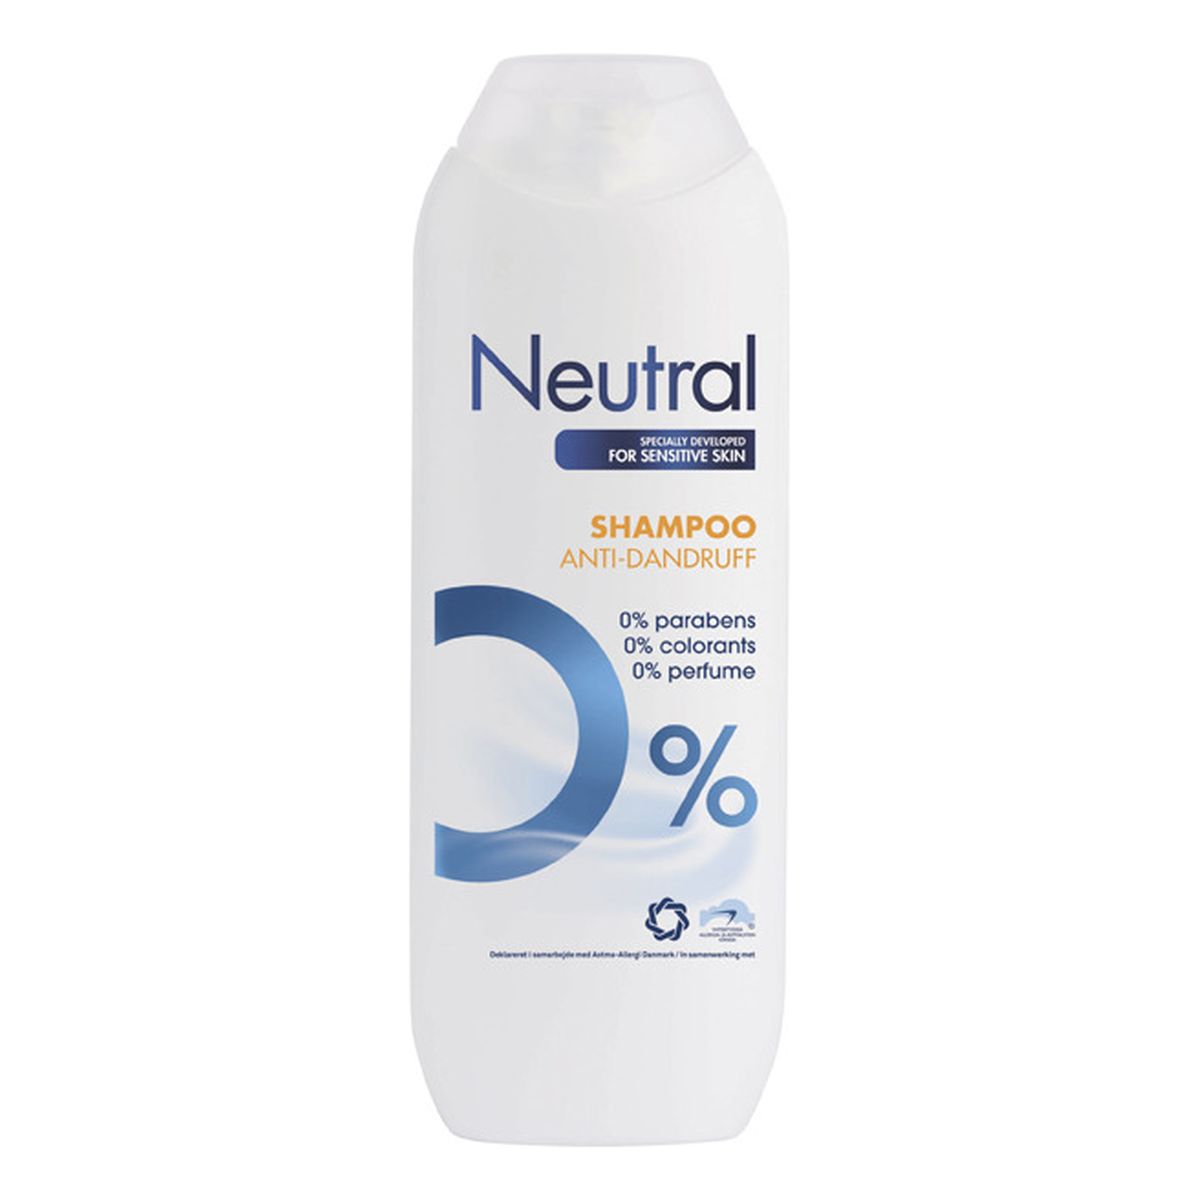 Neutral szampon do włosów przeciwłupieżowy 250ml